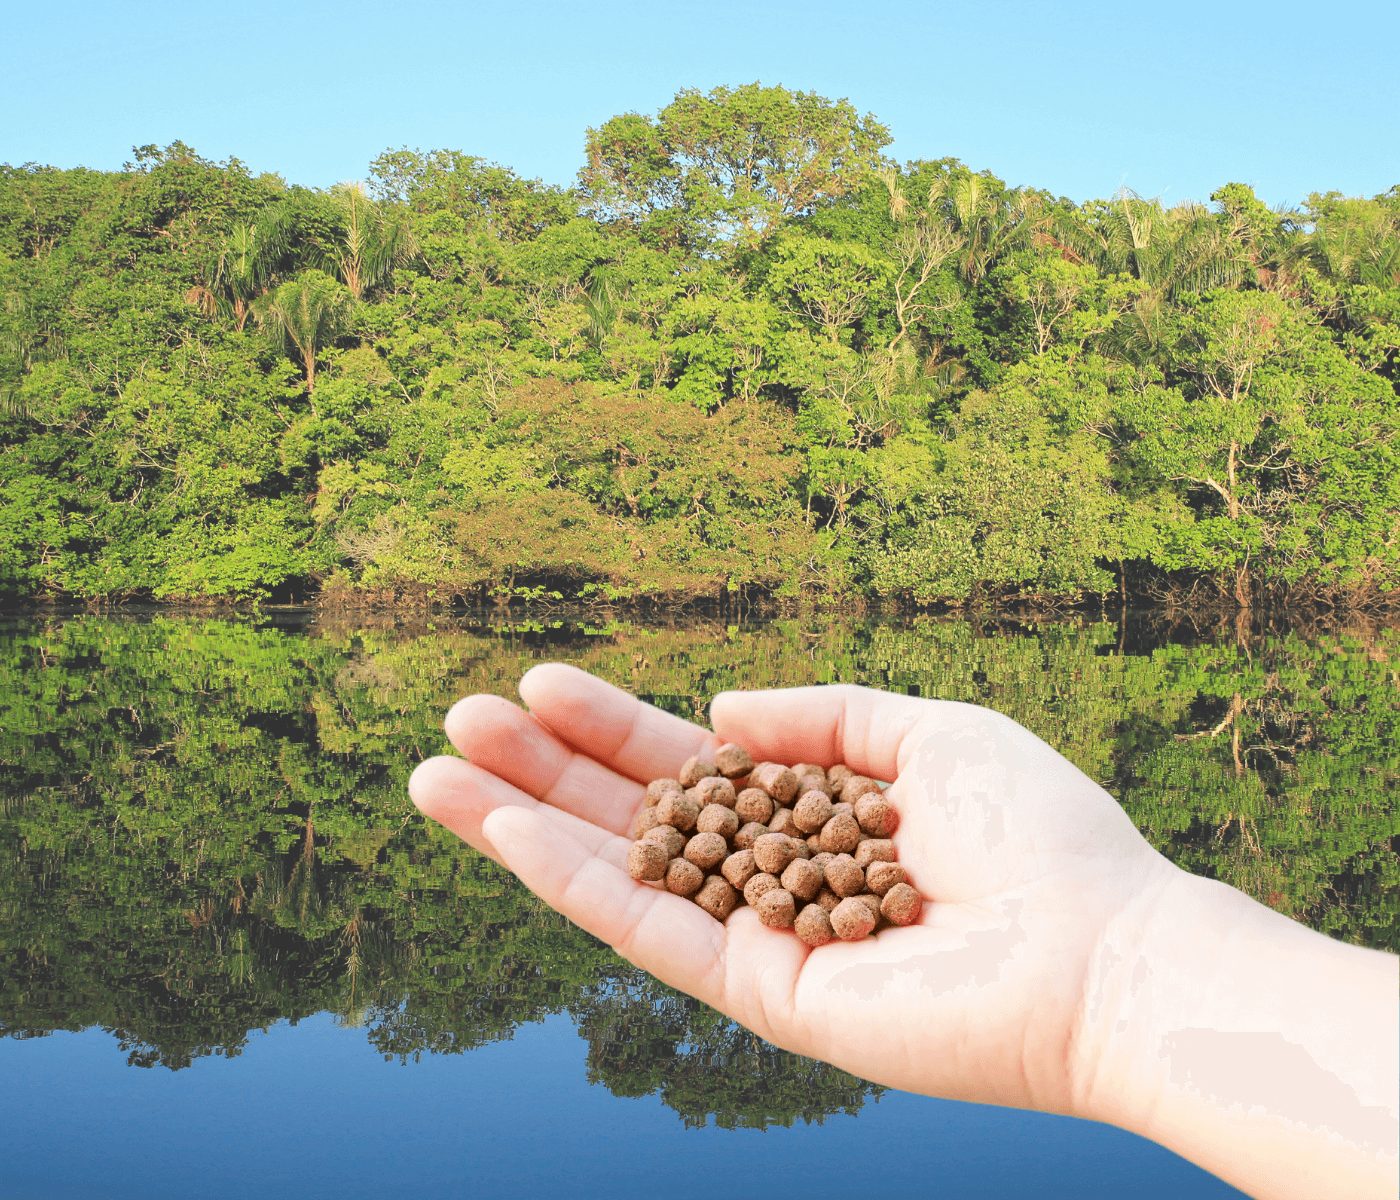 Piscicultura: Amazonas pode produzir ração orgânica, diz pesquisa